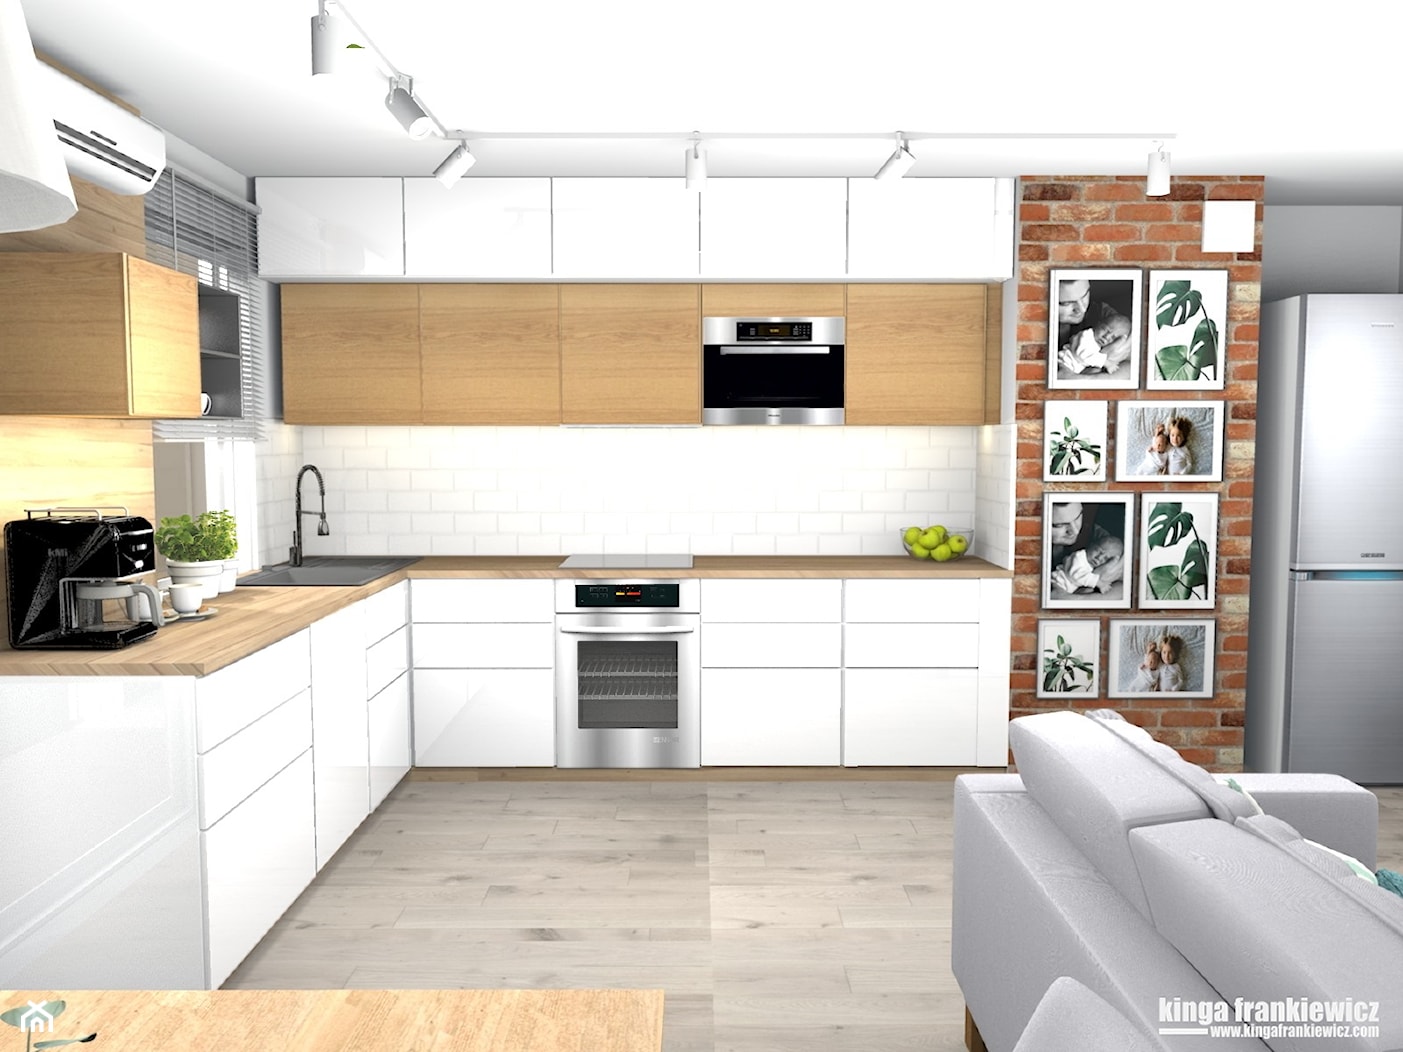 Nowe mieszkanie, cegła i więcej przestrzeni - Kuchnia, styl nowoczesny - zdjęcie od Pracownia Kardamon - Homebook